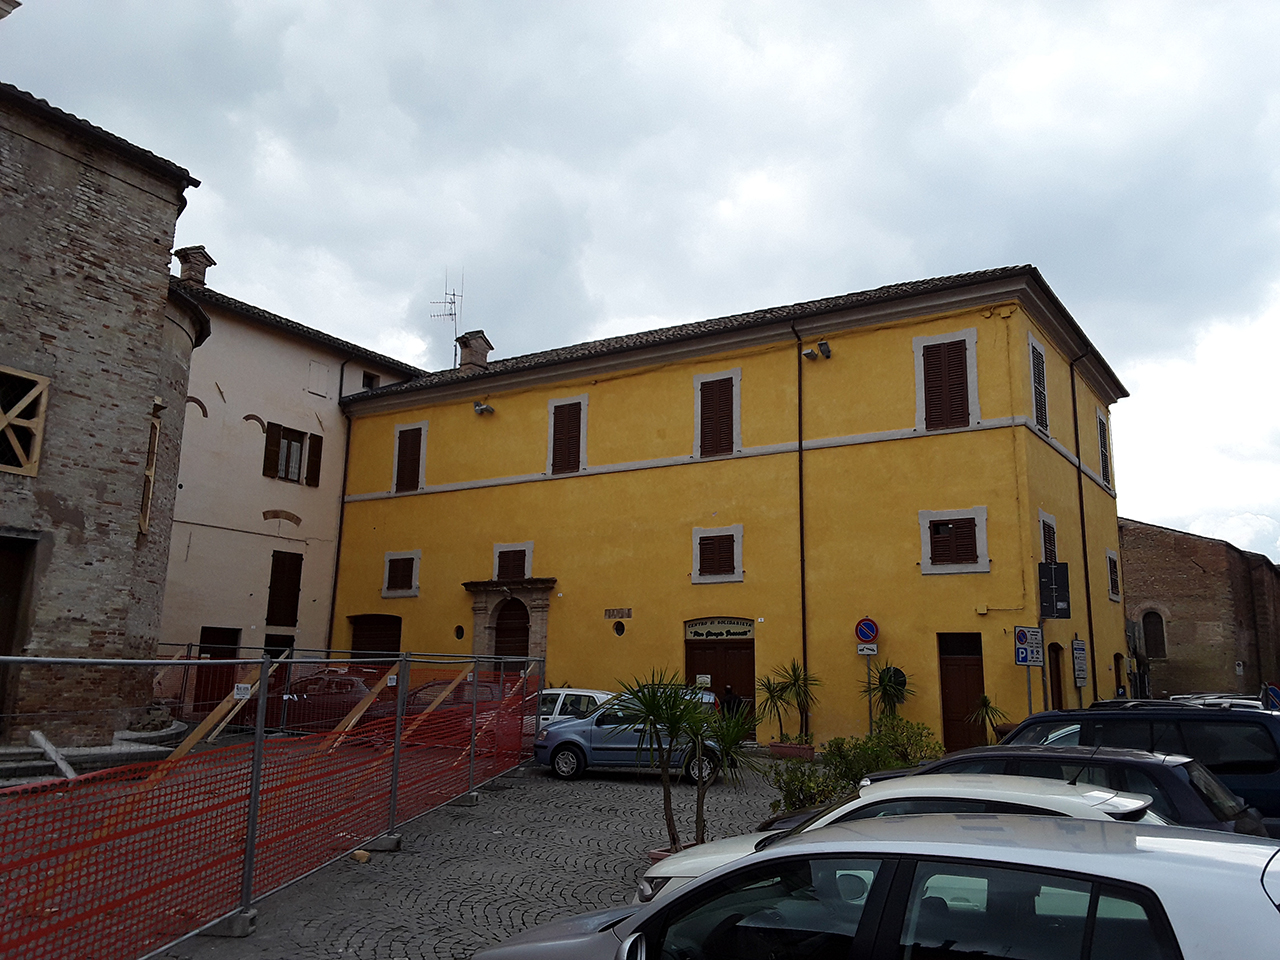 Casa canonica di San Francesco (canonica) - Tolentino (MC)  (XIII)